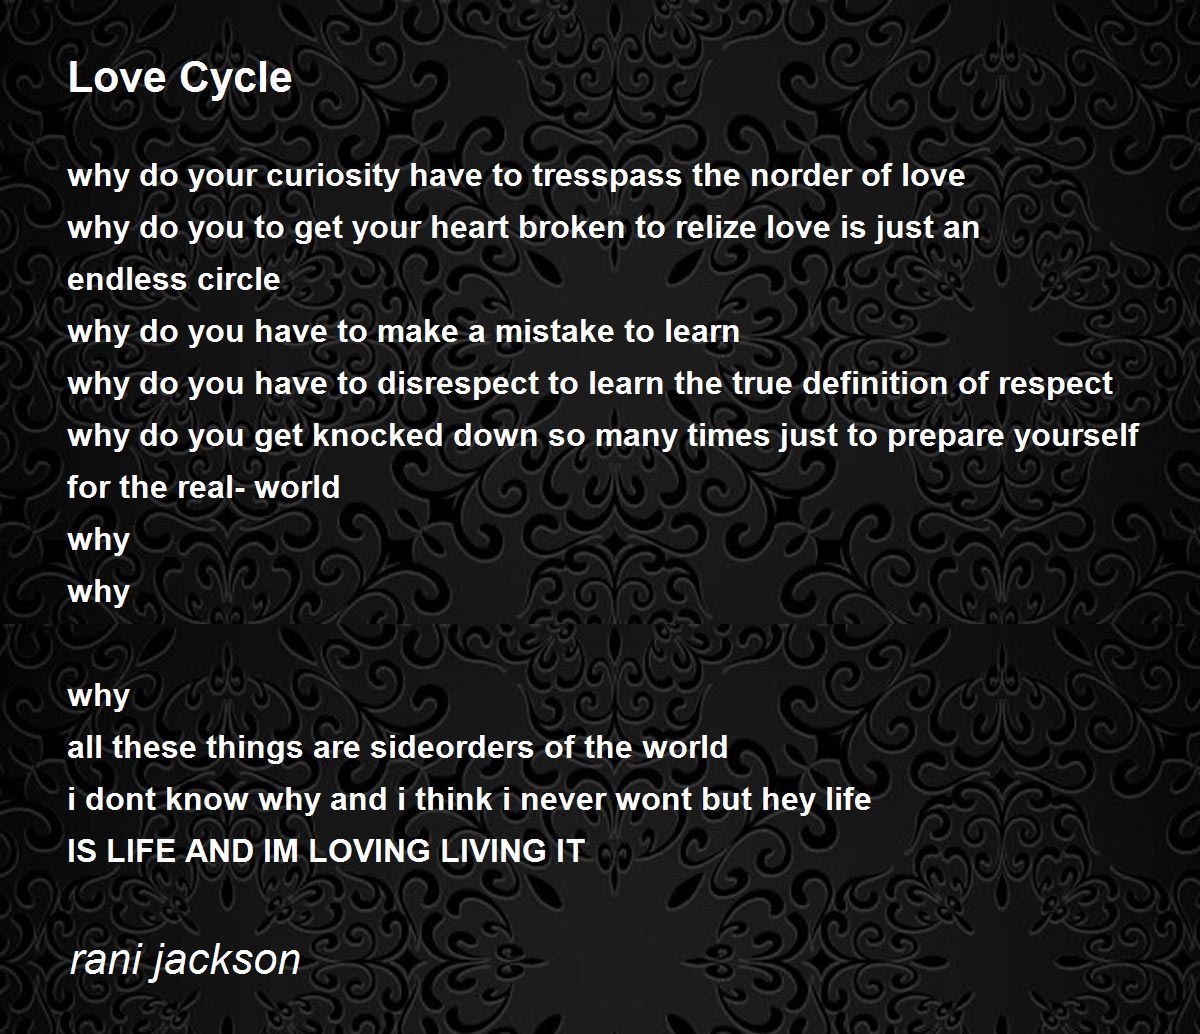 love cycle poem essay